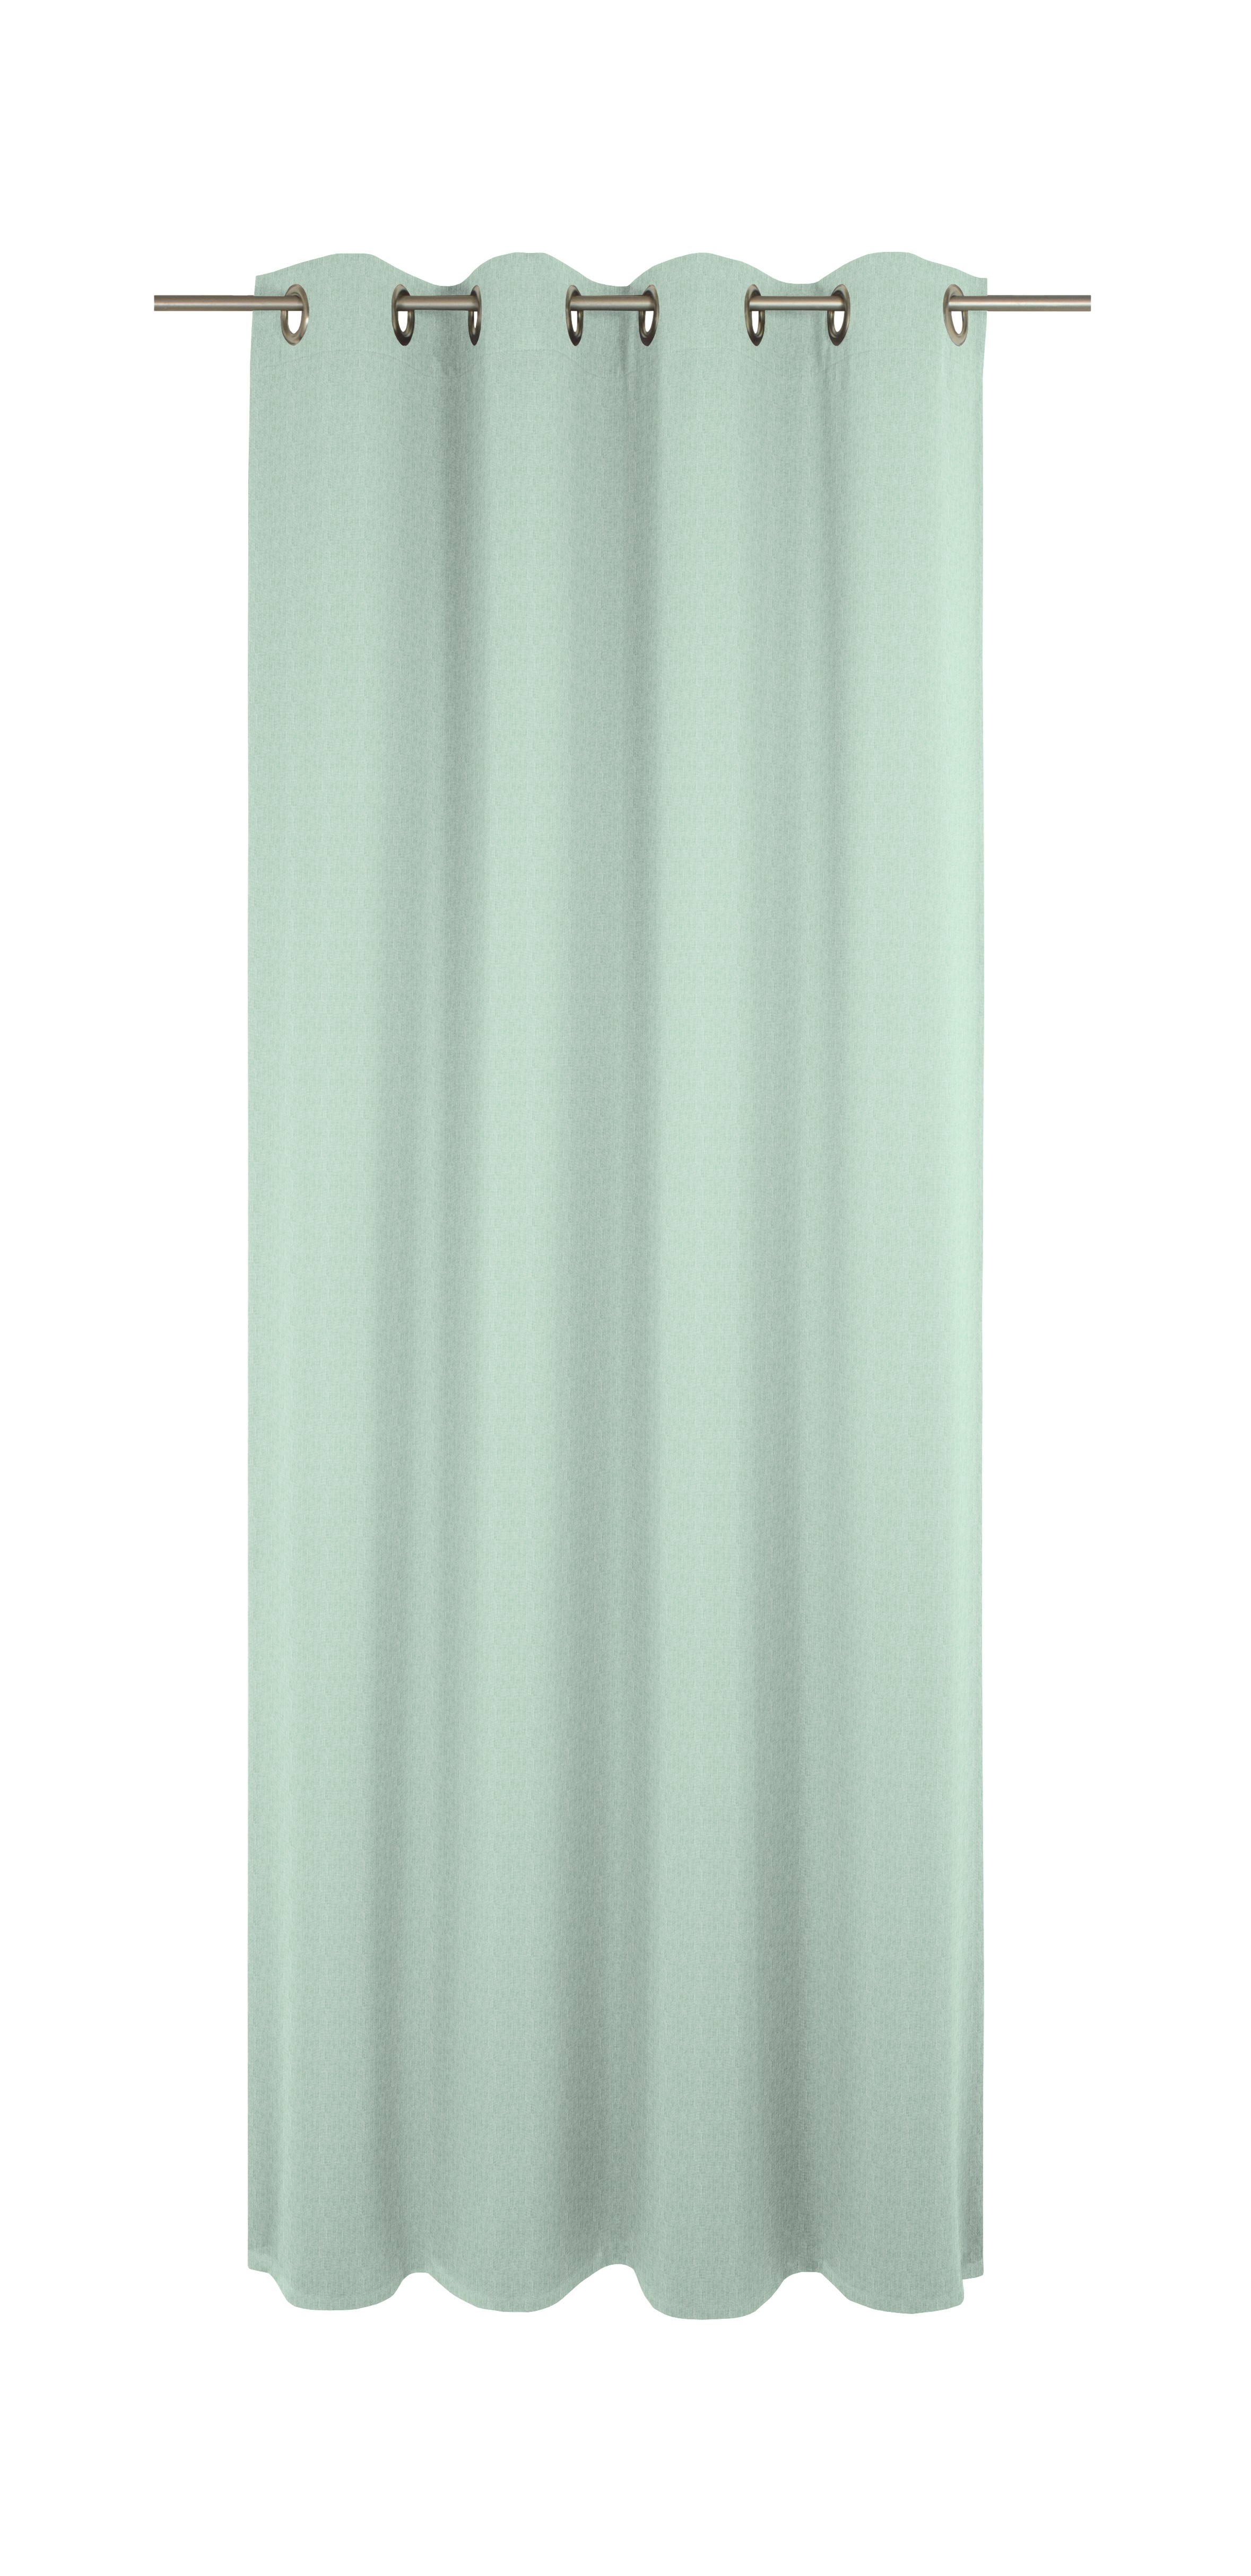 Sunday (Vorhang) - Farbe: Mint | Größe: 255 x 142 cm | Aufmachung: Ösen